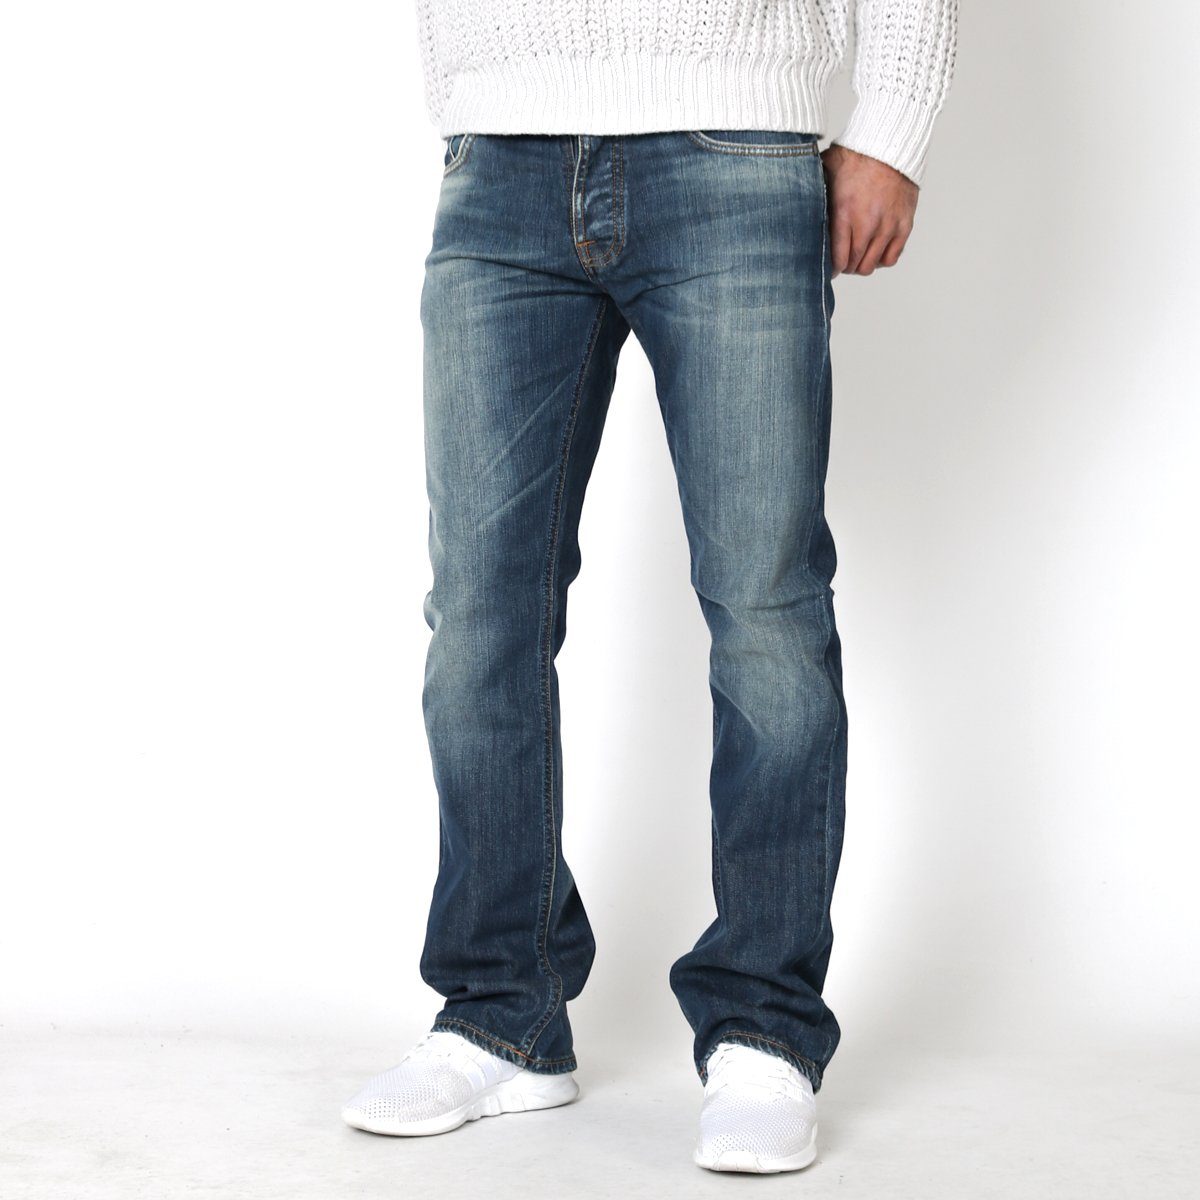 Nudie Jeans Bootcut-Jeans Herren Regular Bootcut Stretch Hose - Regular Alf  Cold Wash W34 L32 online kaufen | OTTO